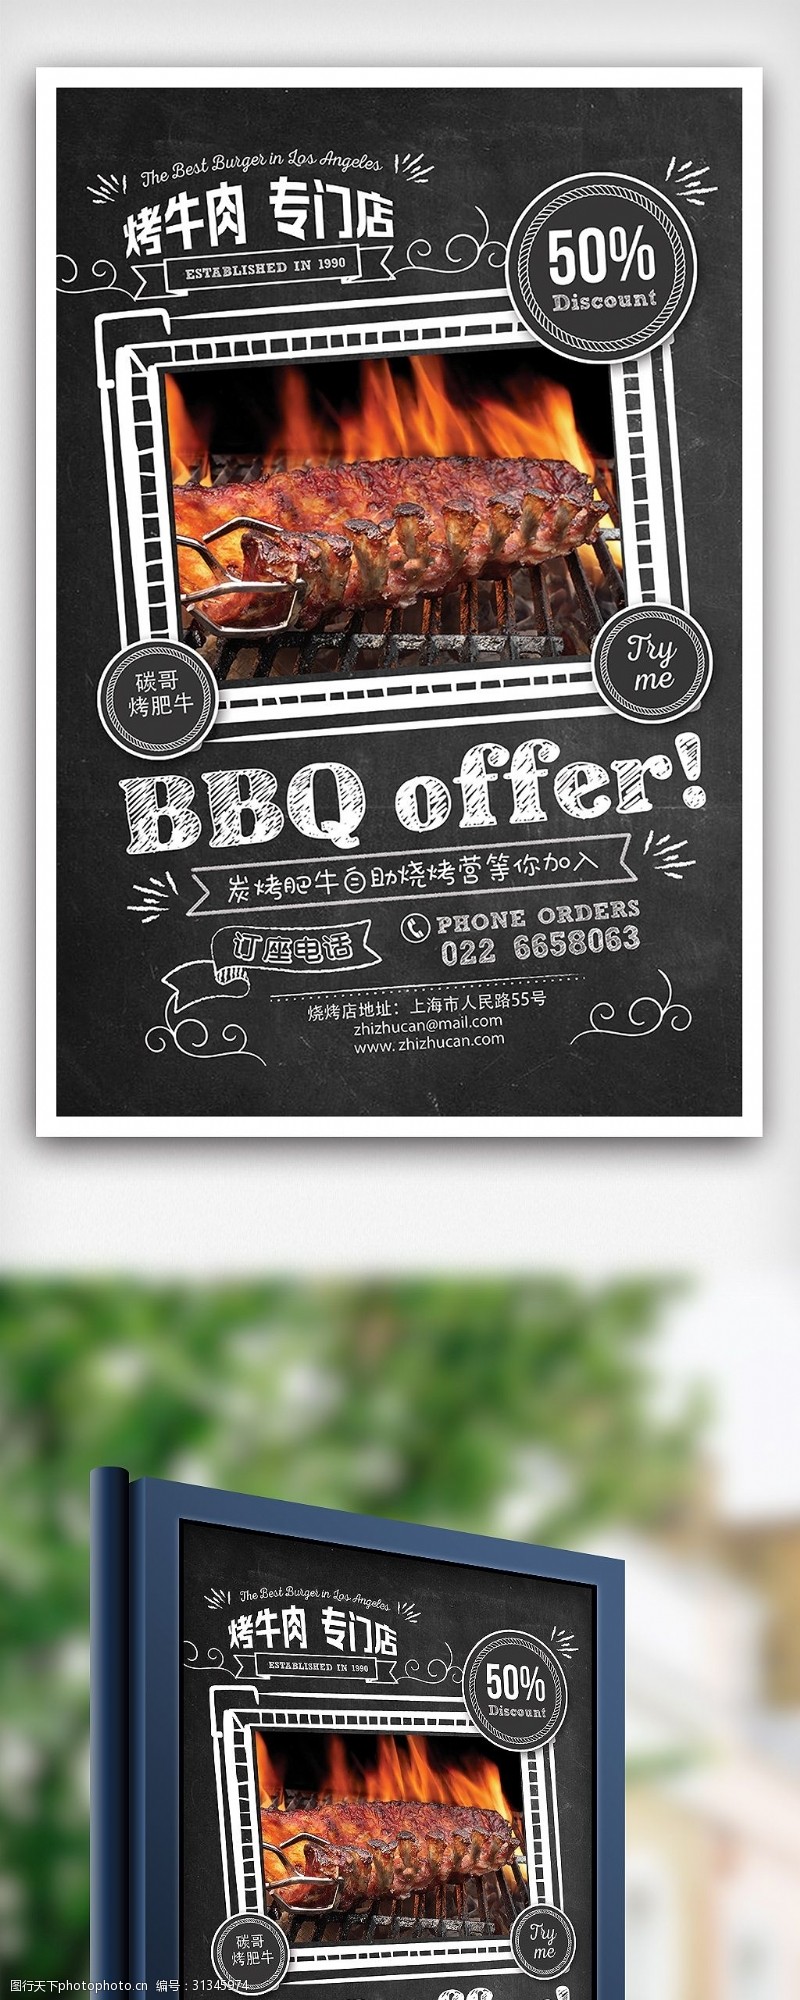 特价图片免费下载烤牛肉专卖店特价促销海报设计